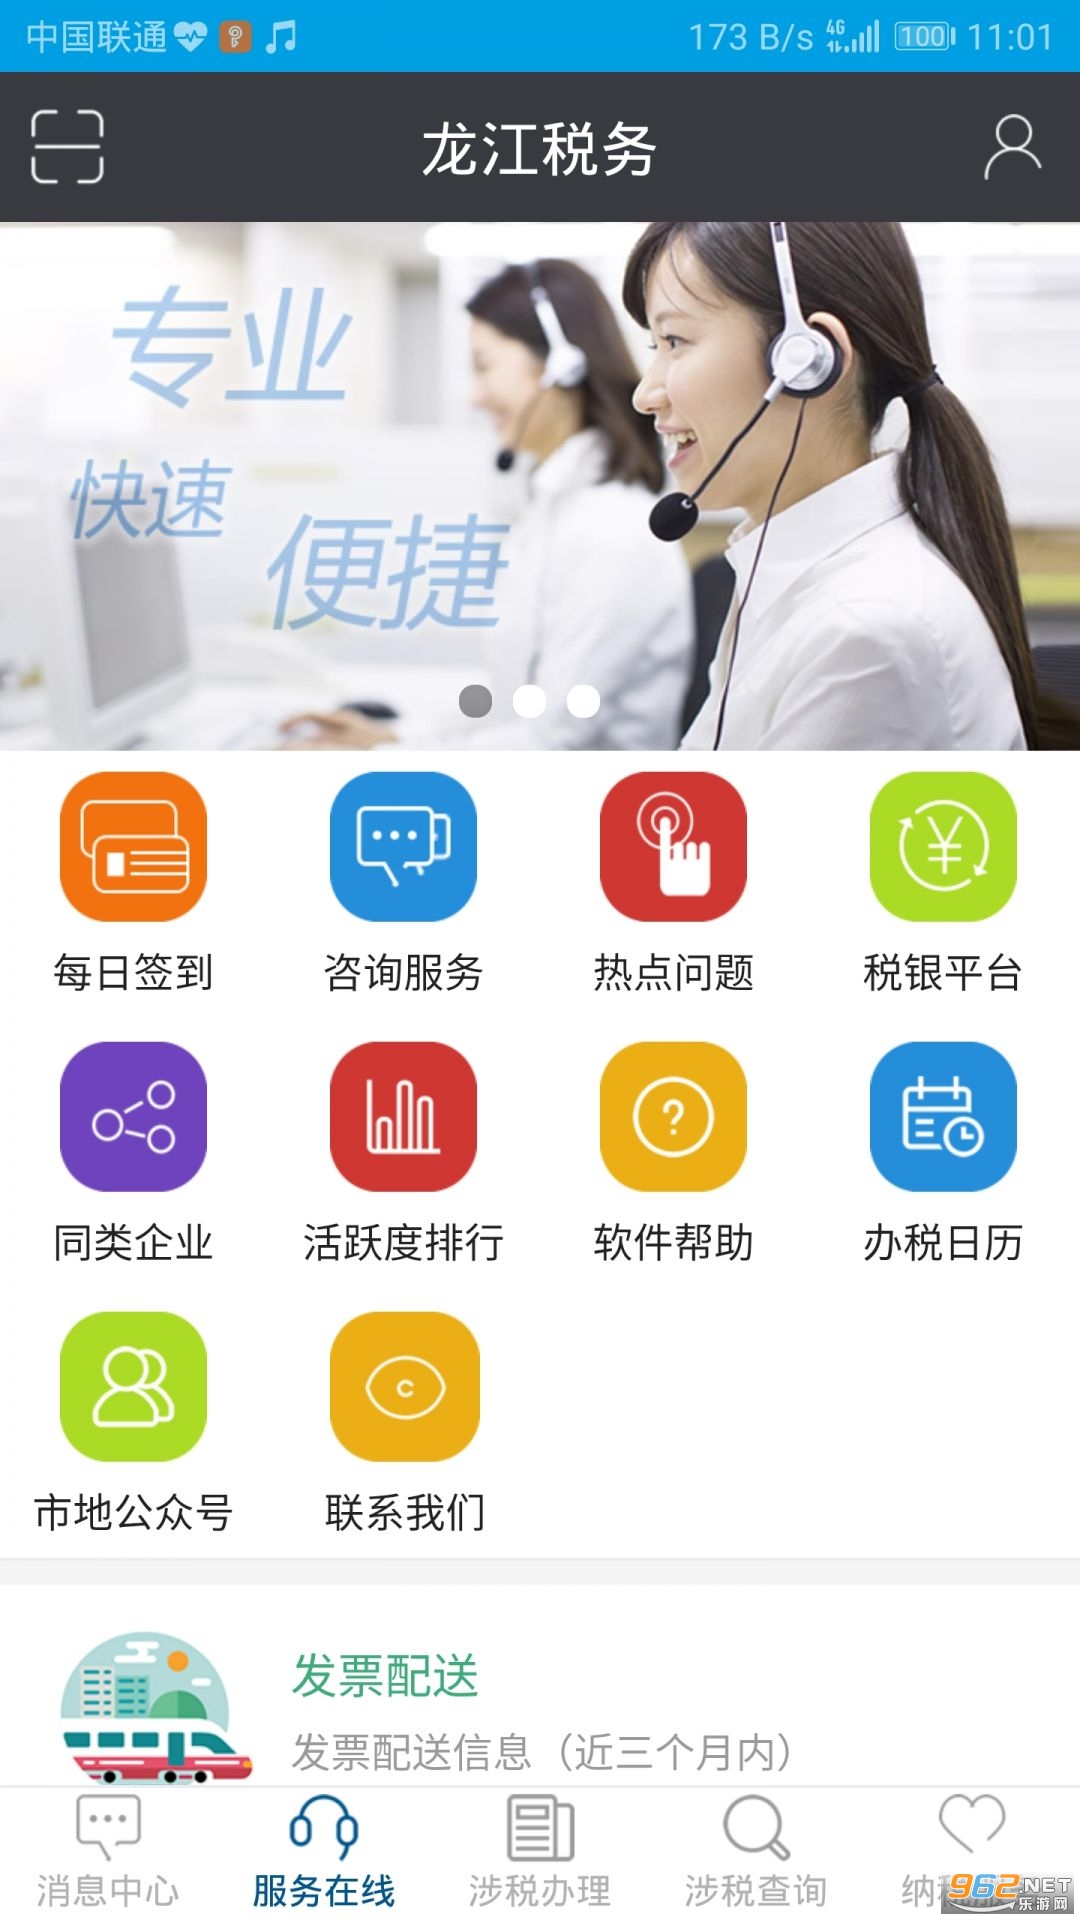 龙江税务手机客户端 app v5.4.2